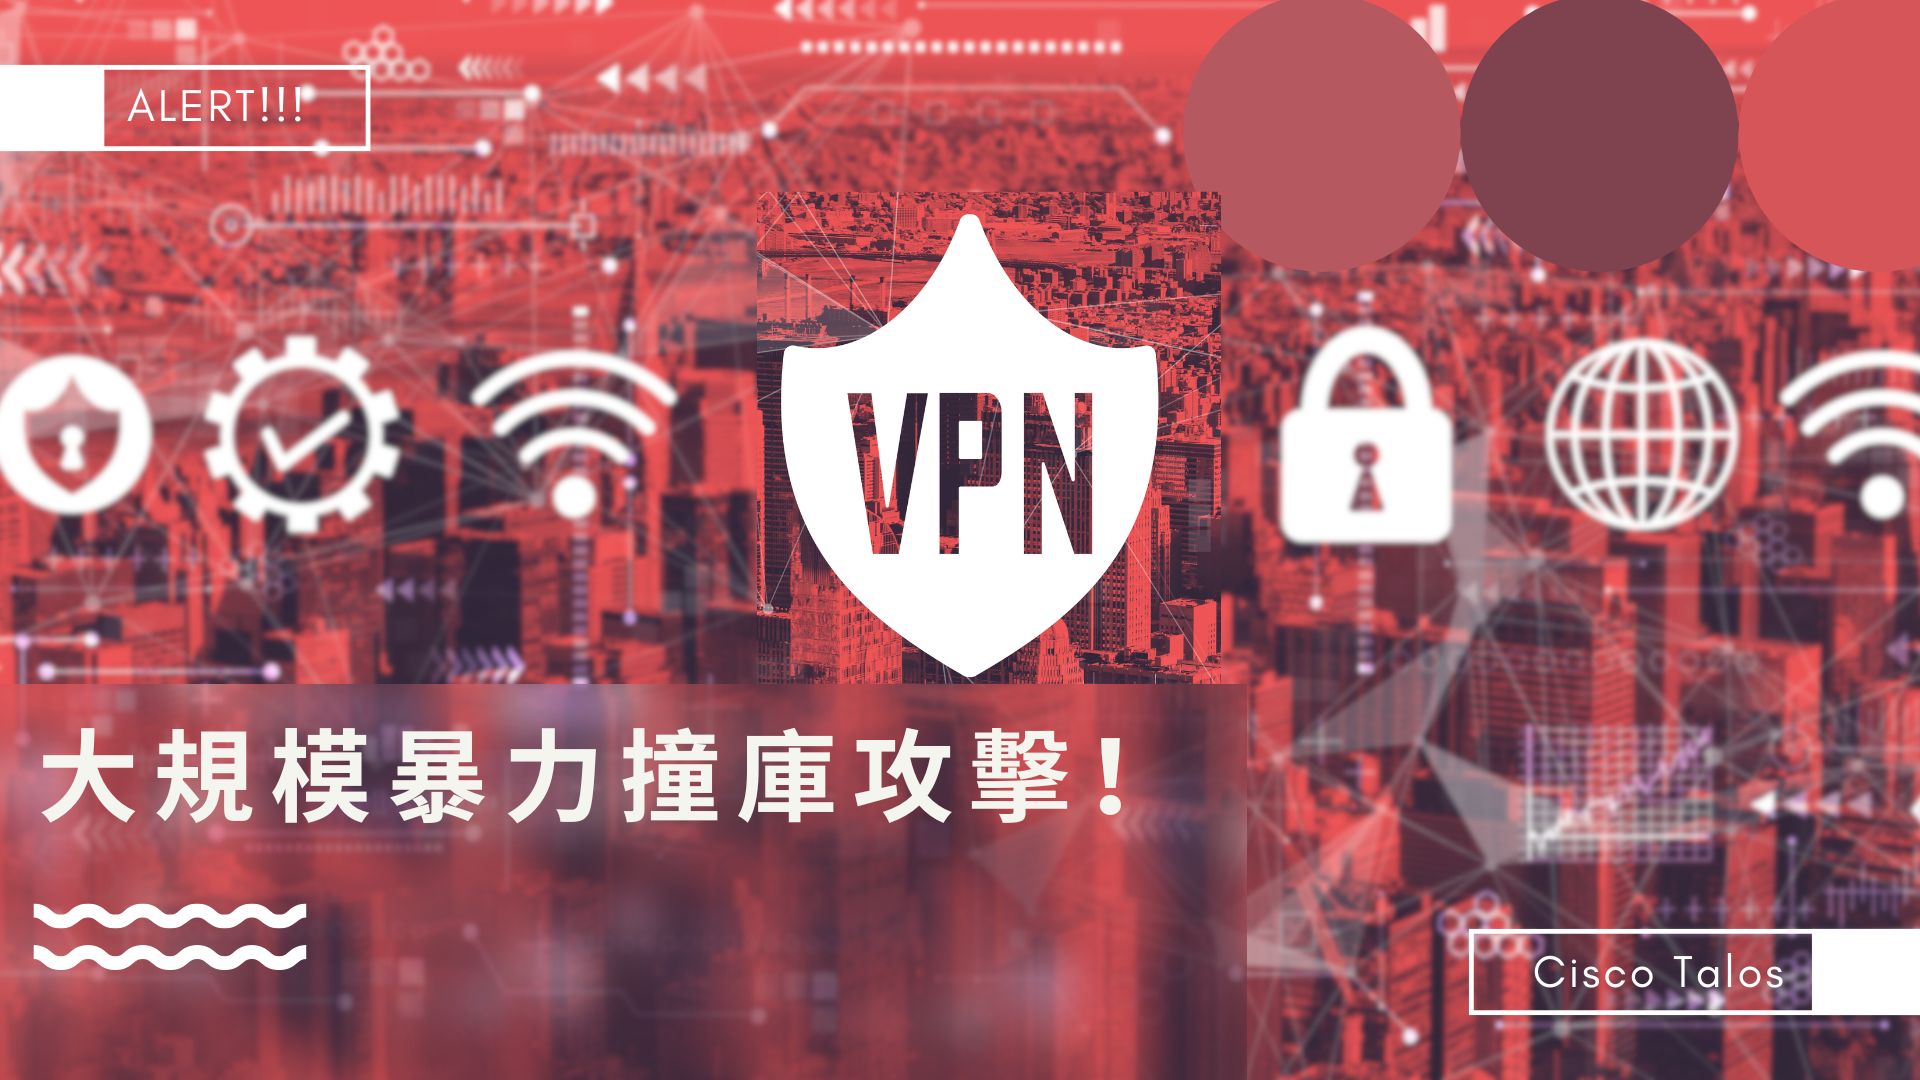 思科示警VPN、SSH服務遭大規模暴力撞庫攻擊